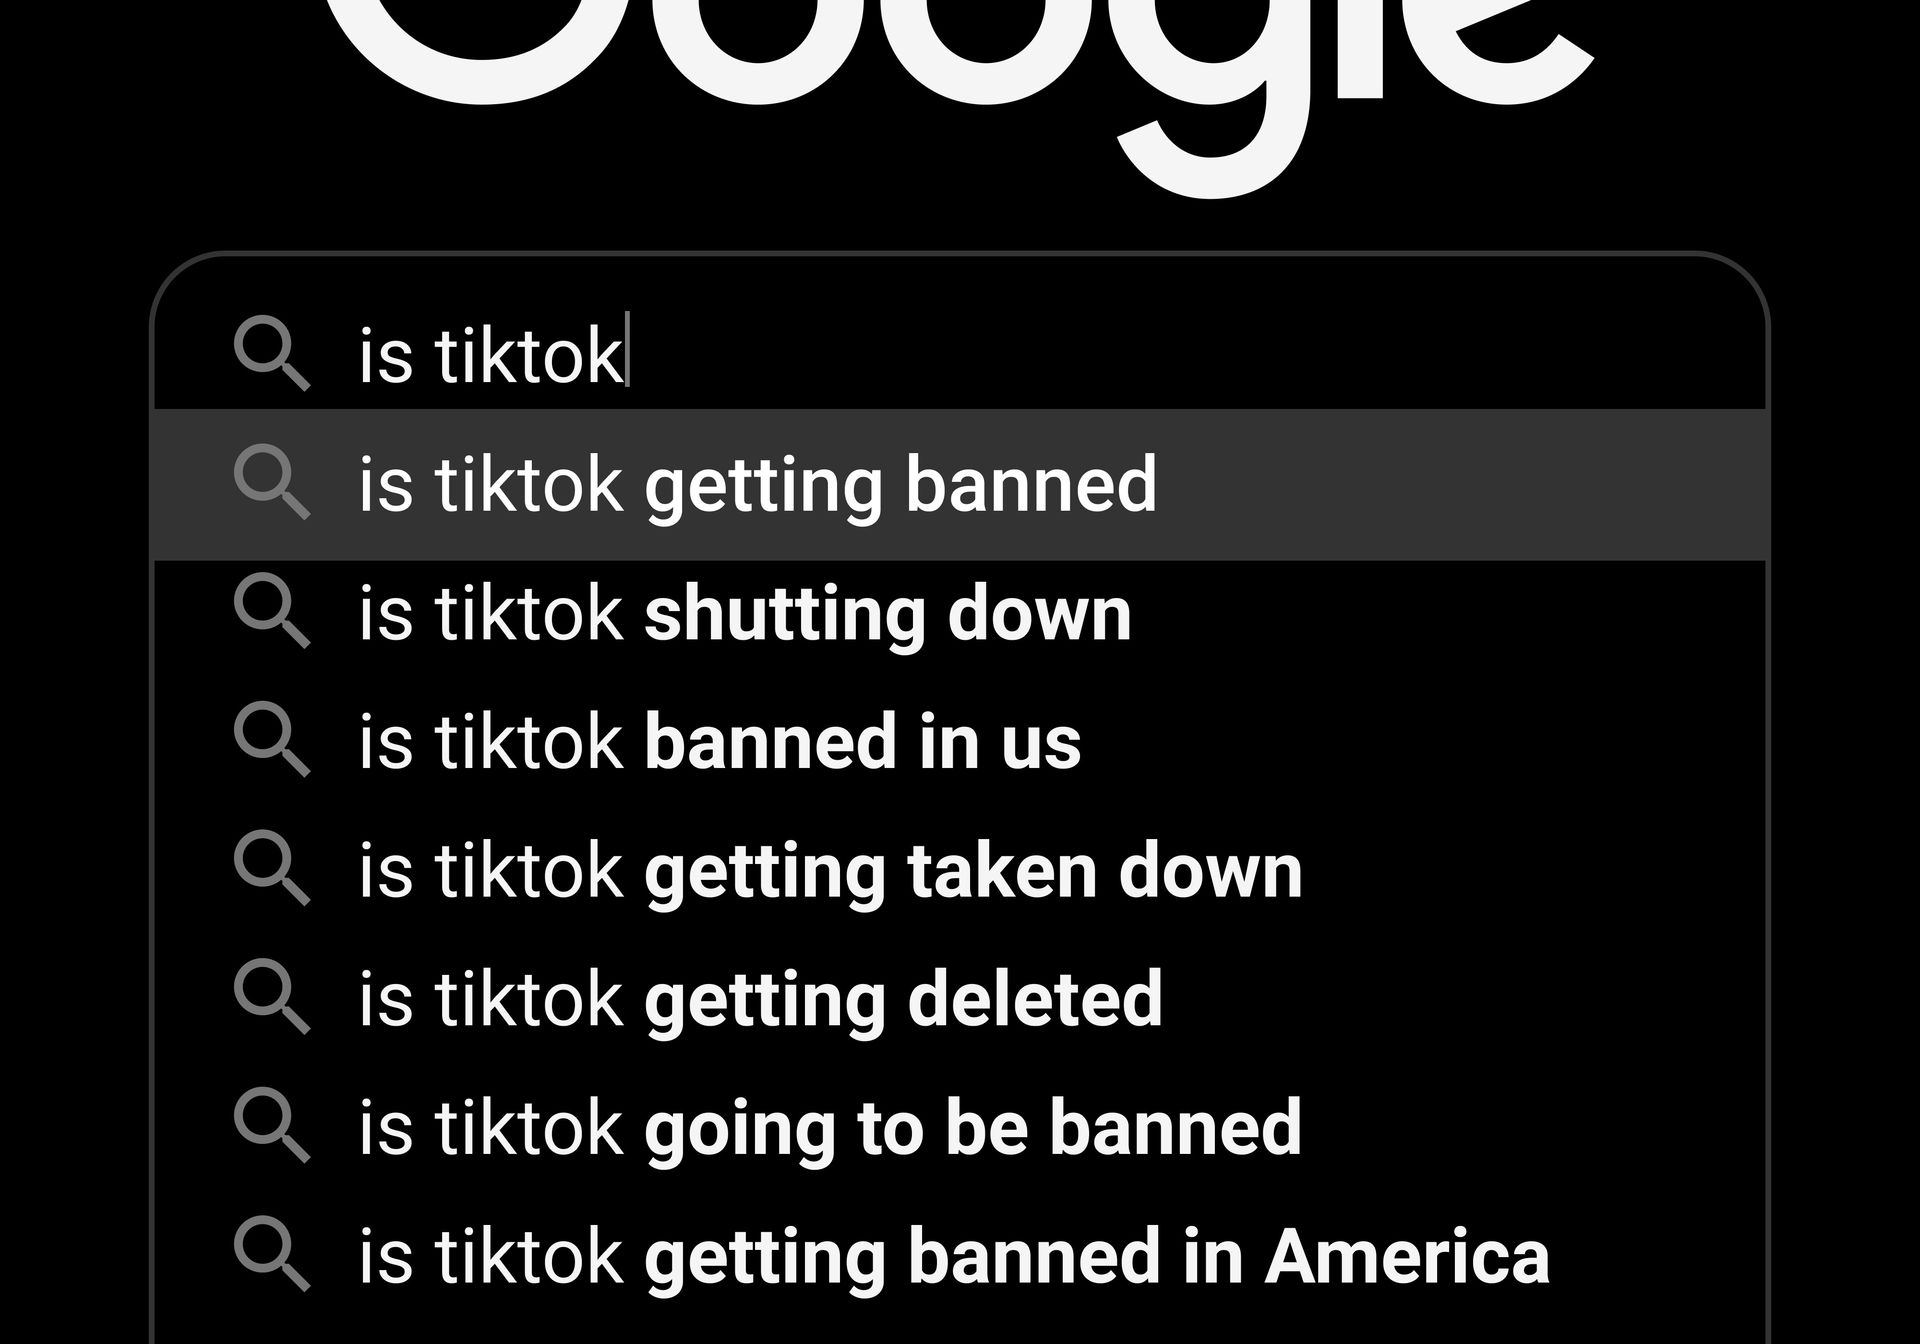 Perguntas futuras: O TikTok foi banido ou vendido?